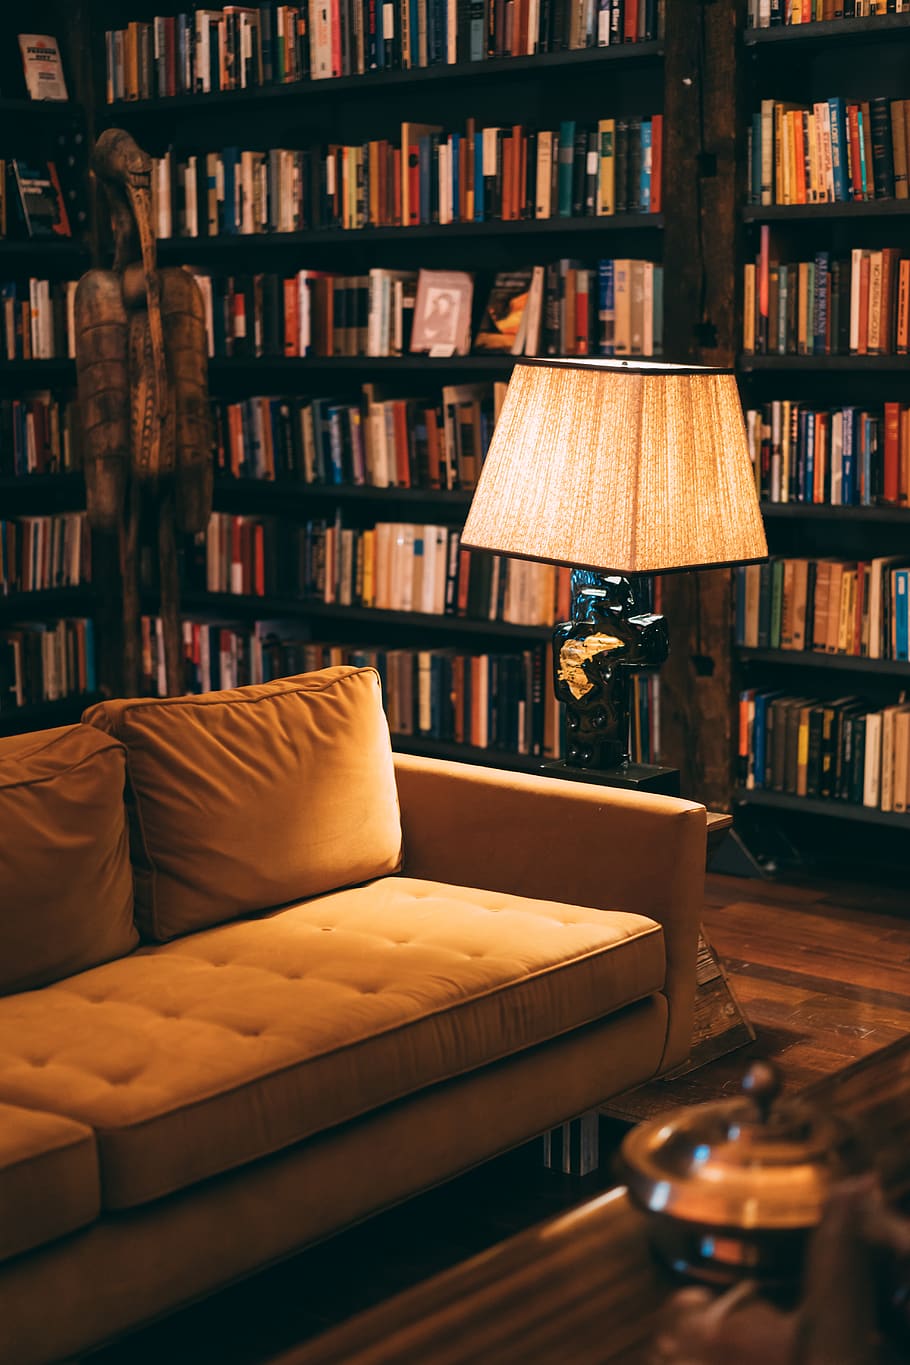 Turned on Floor Lamp Near Sofa, book bindings, book shelves, books